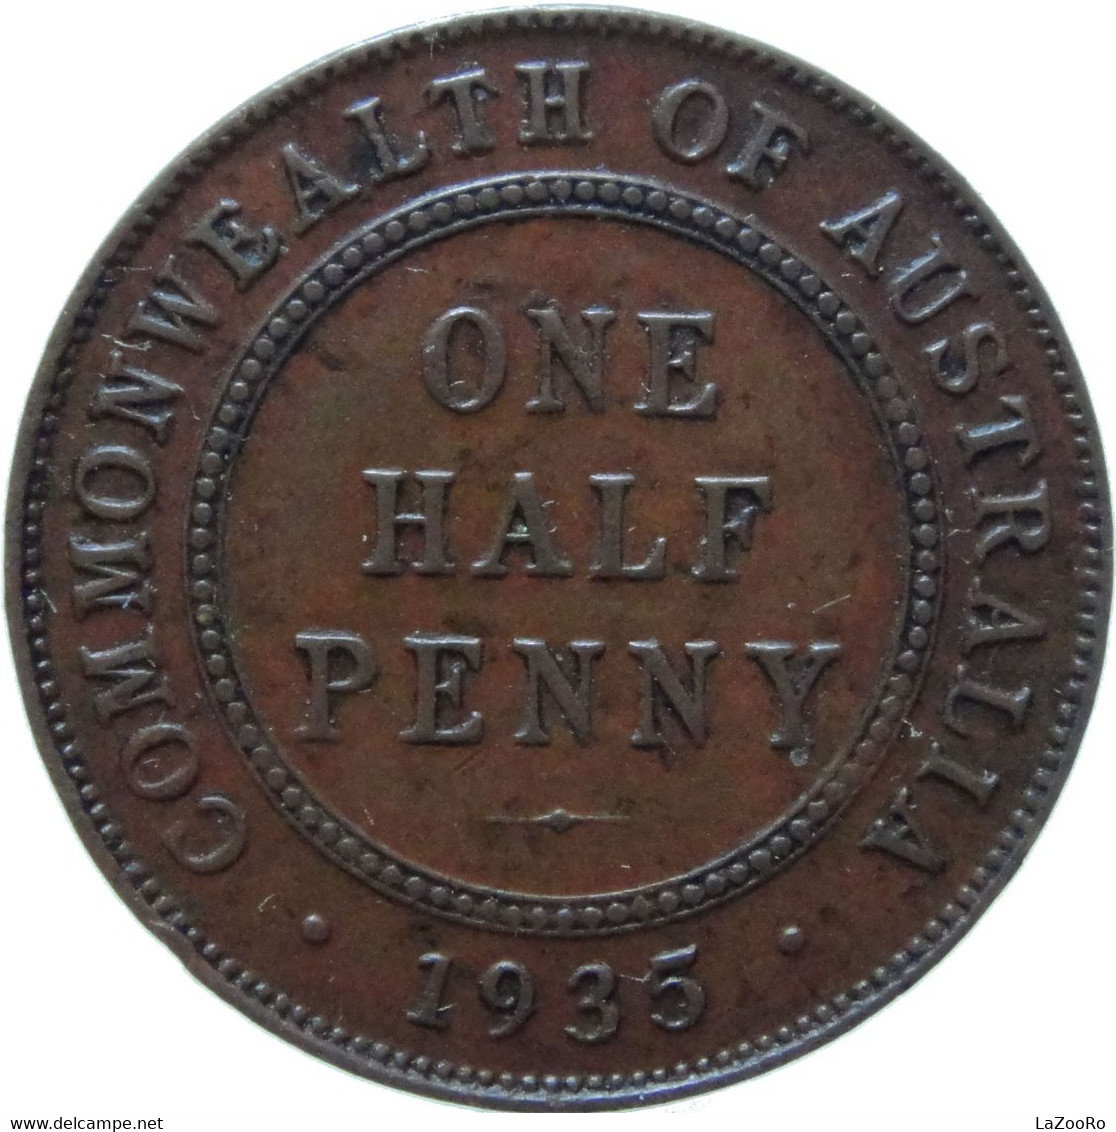 LaZooRo: Australia 1/2 Penny 1935 XF - ½ Penny